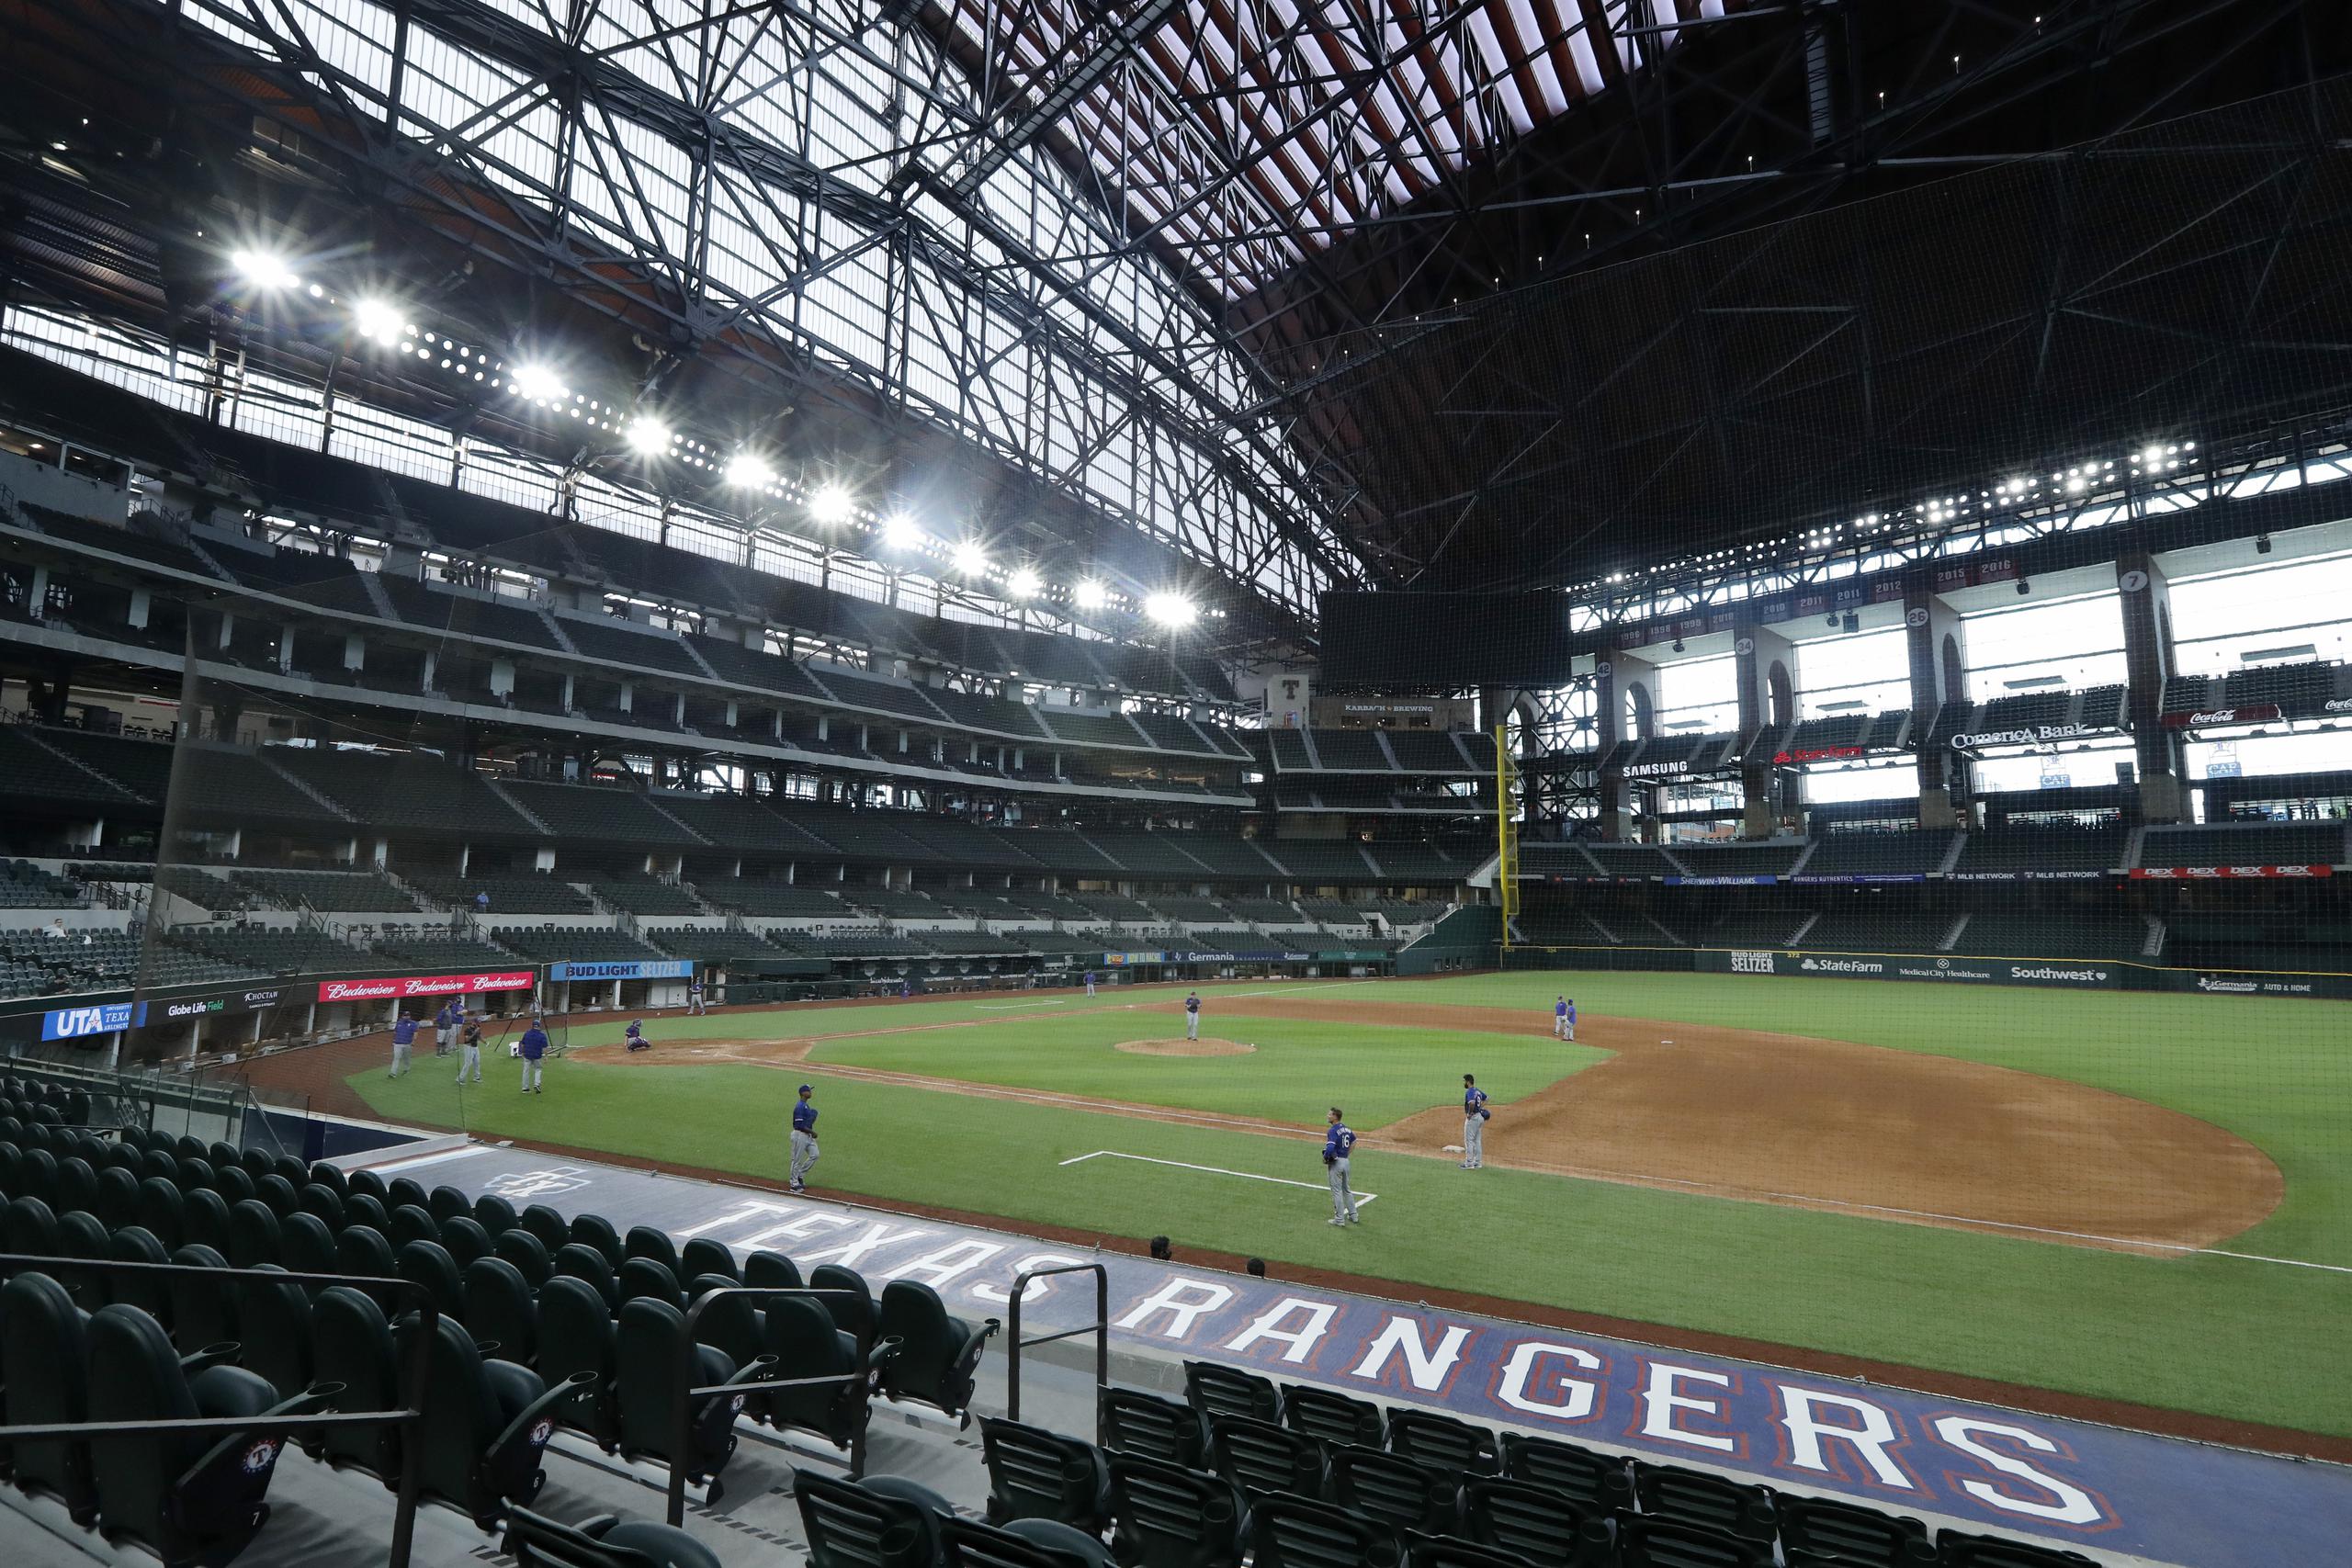 El nuevo estadio de los Vigilantes de Texas, el Globe Life Park, tendrá su primer partido el próximo 24 de julio cuando el equipo reciba a los Rockies de Colorado.